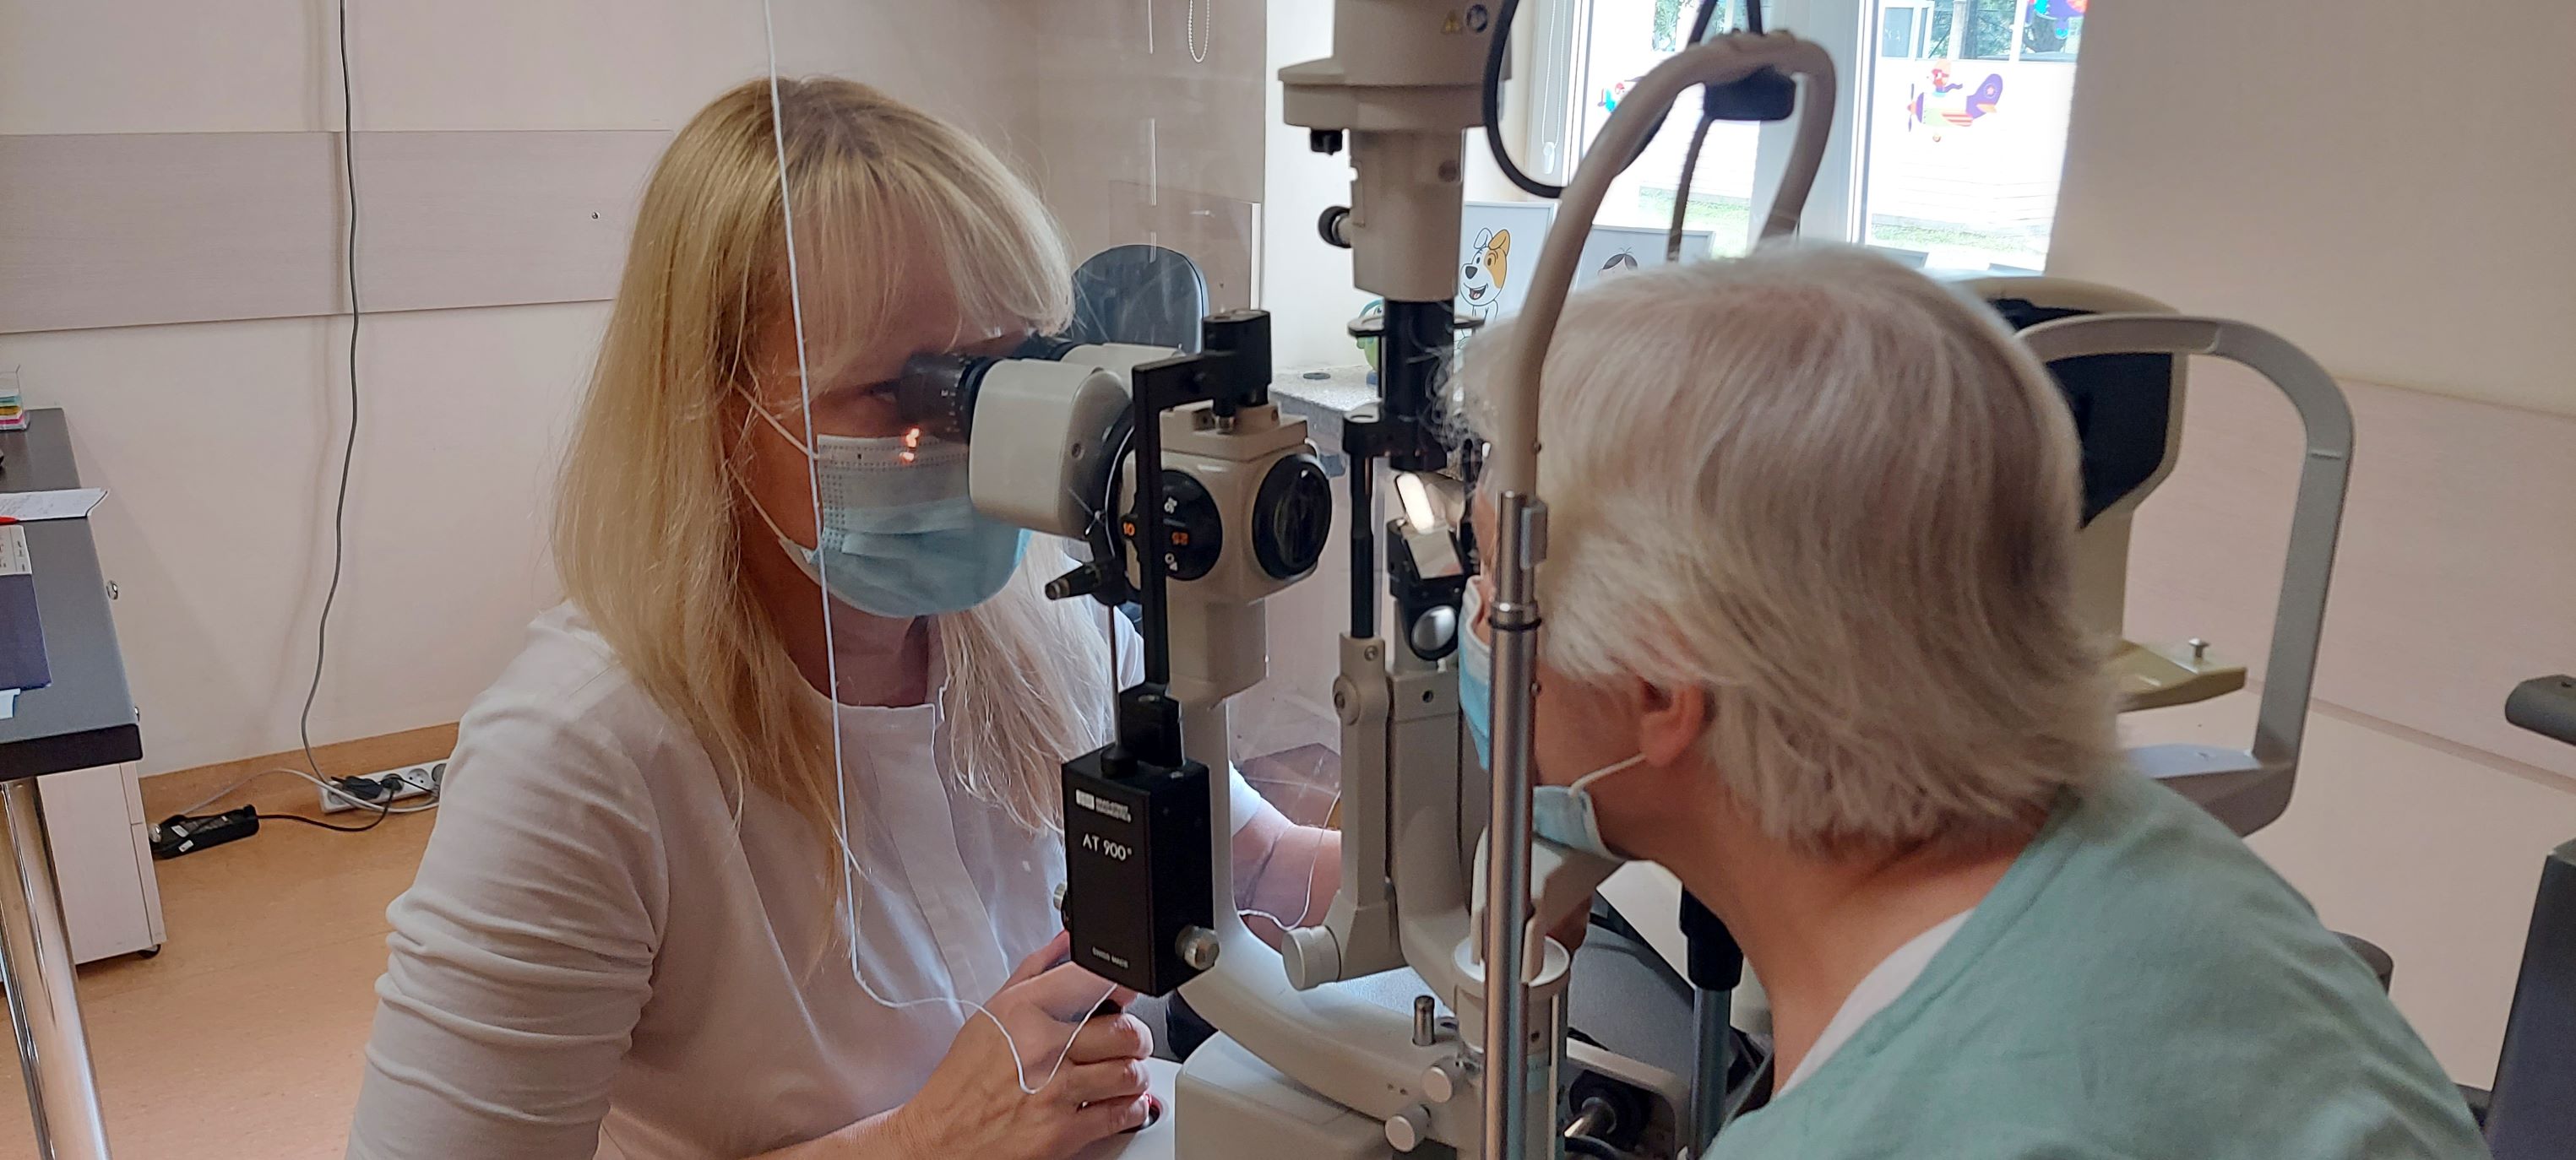 Badania okulistyczne w 1 Wojskowym Szpitalu Klinicznym w ramach „Lubelskich dni promocji zdrowia” (zdjęcia)